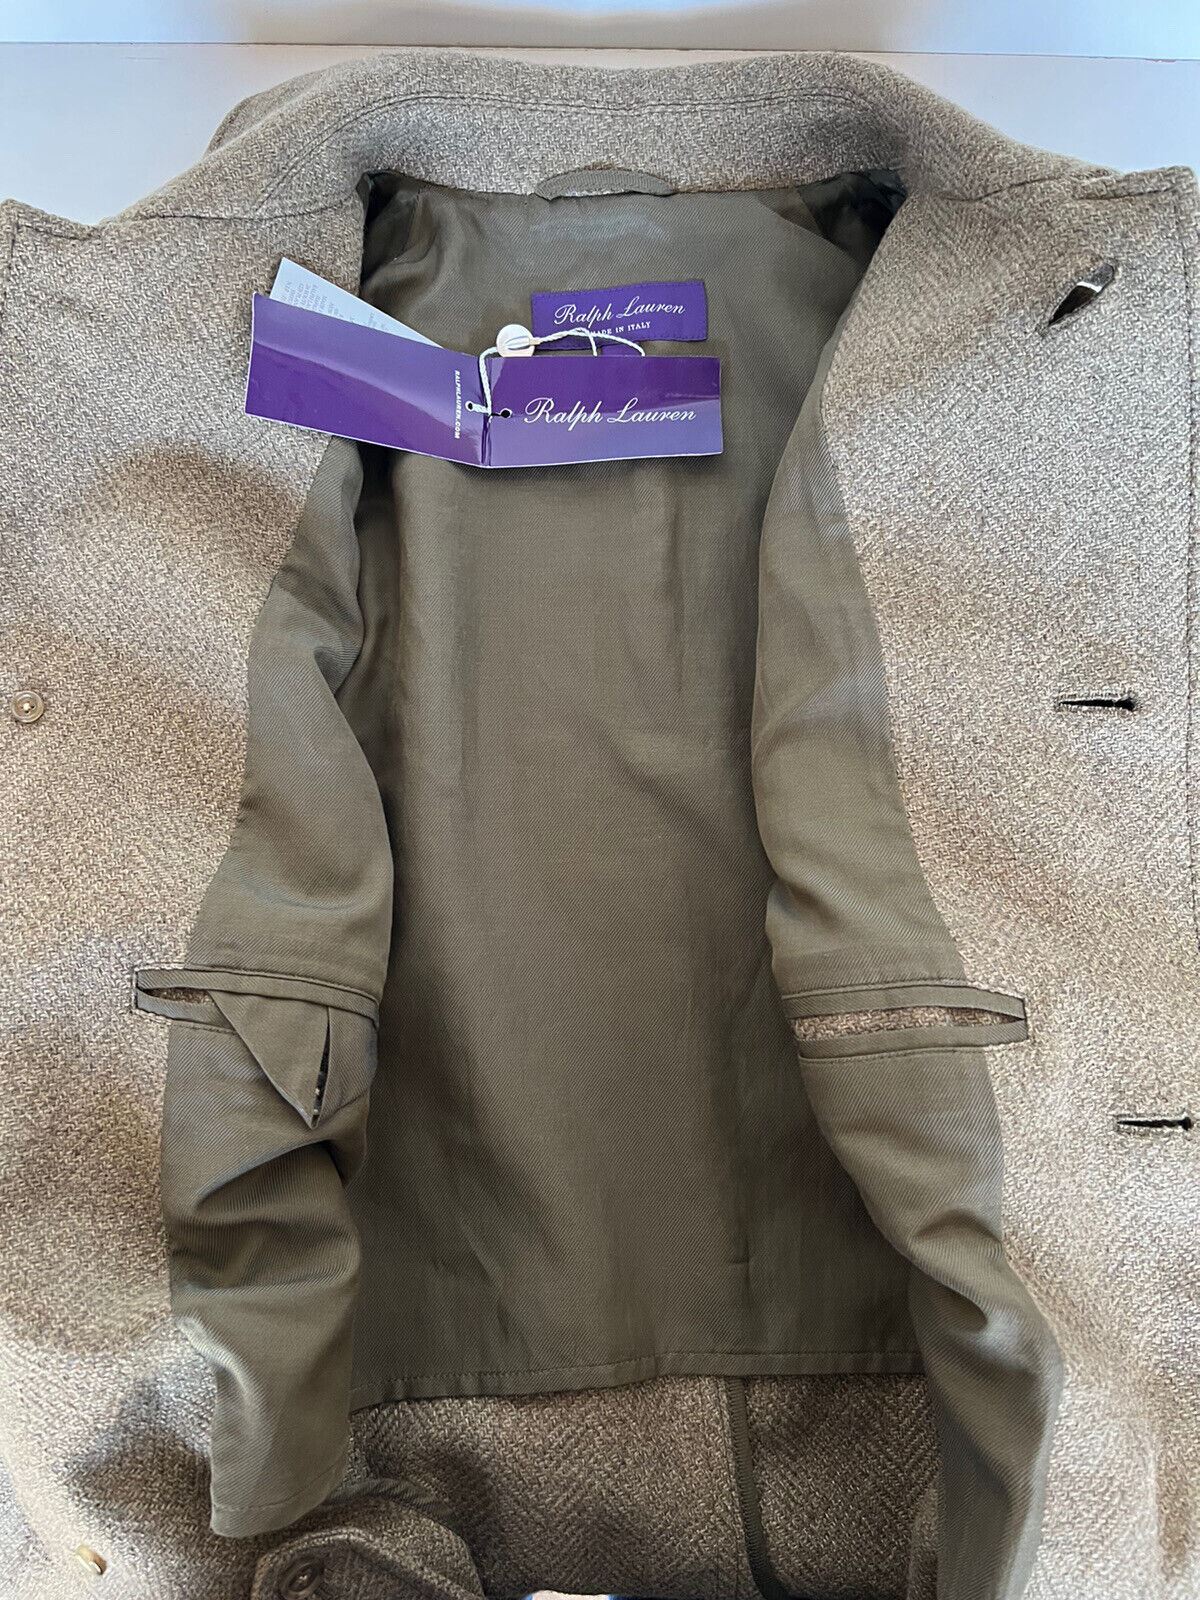 Neu mit Etikett: 2995 $ Ralph Lauren Purple Label Herrenmantel aus Wolle/Seide, Grün, Größe 40, Italien 